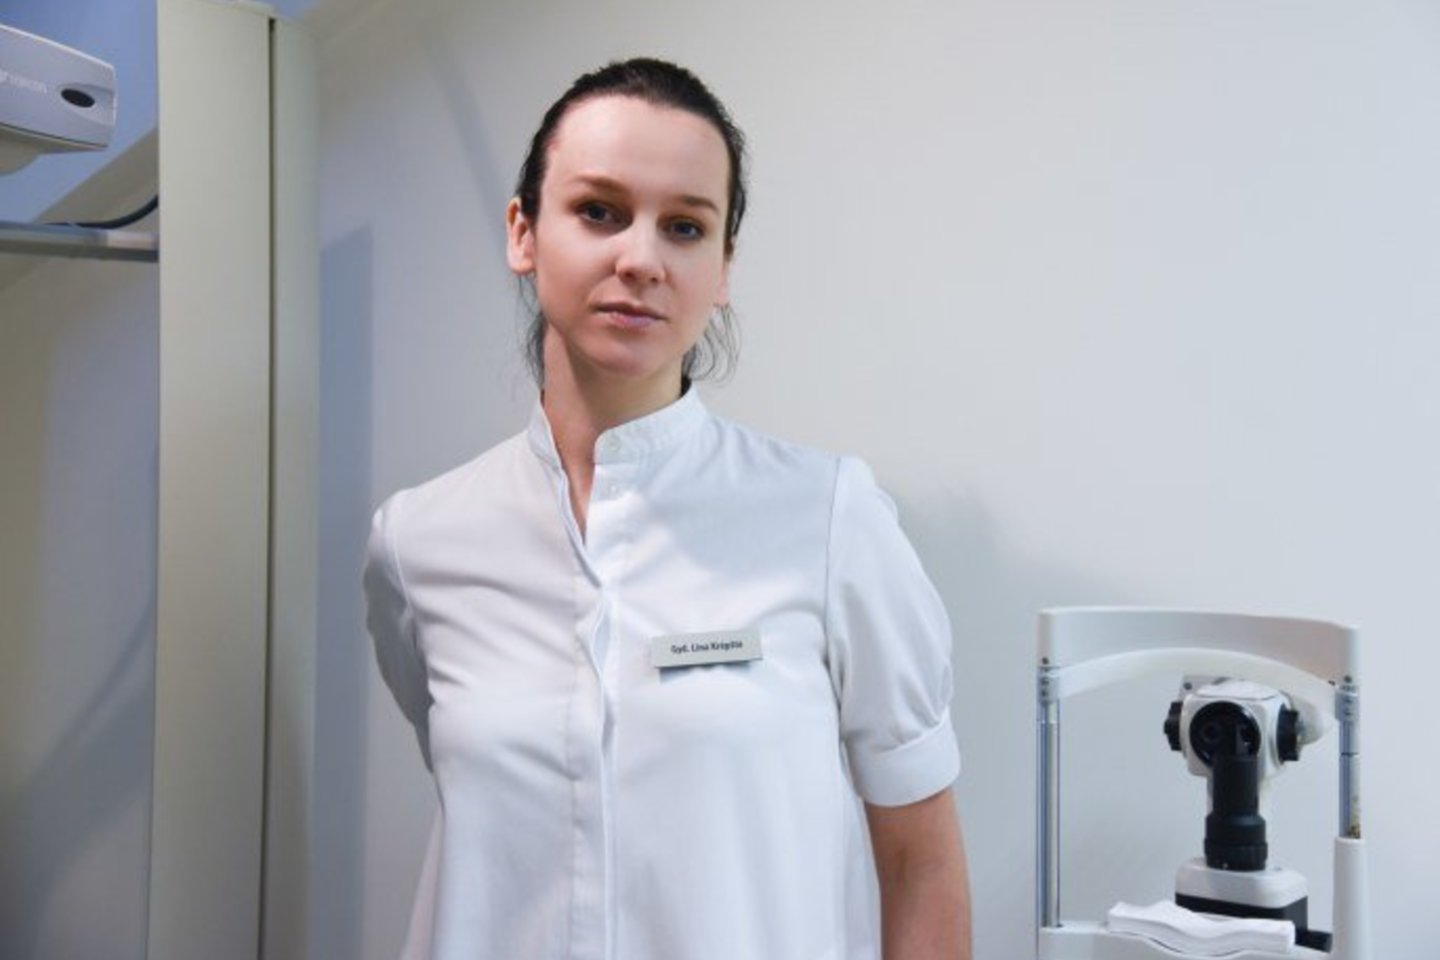 Akių ligų gydytoja, mikrochirurgė Lina Krėpštė<br>Asmenino albumo nuotr.